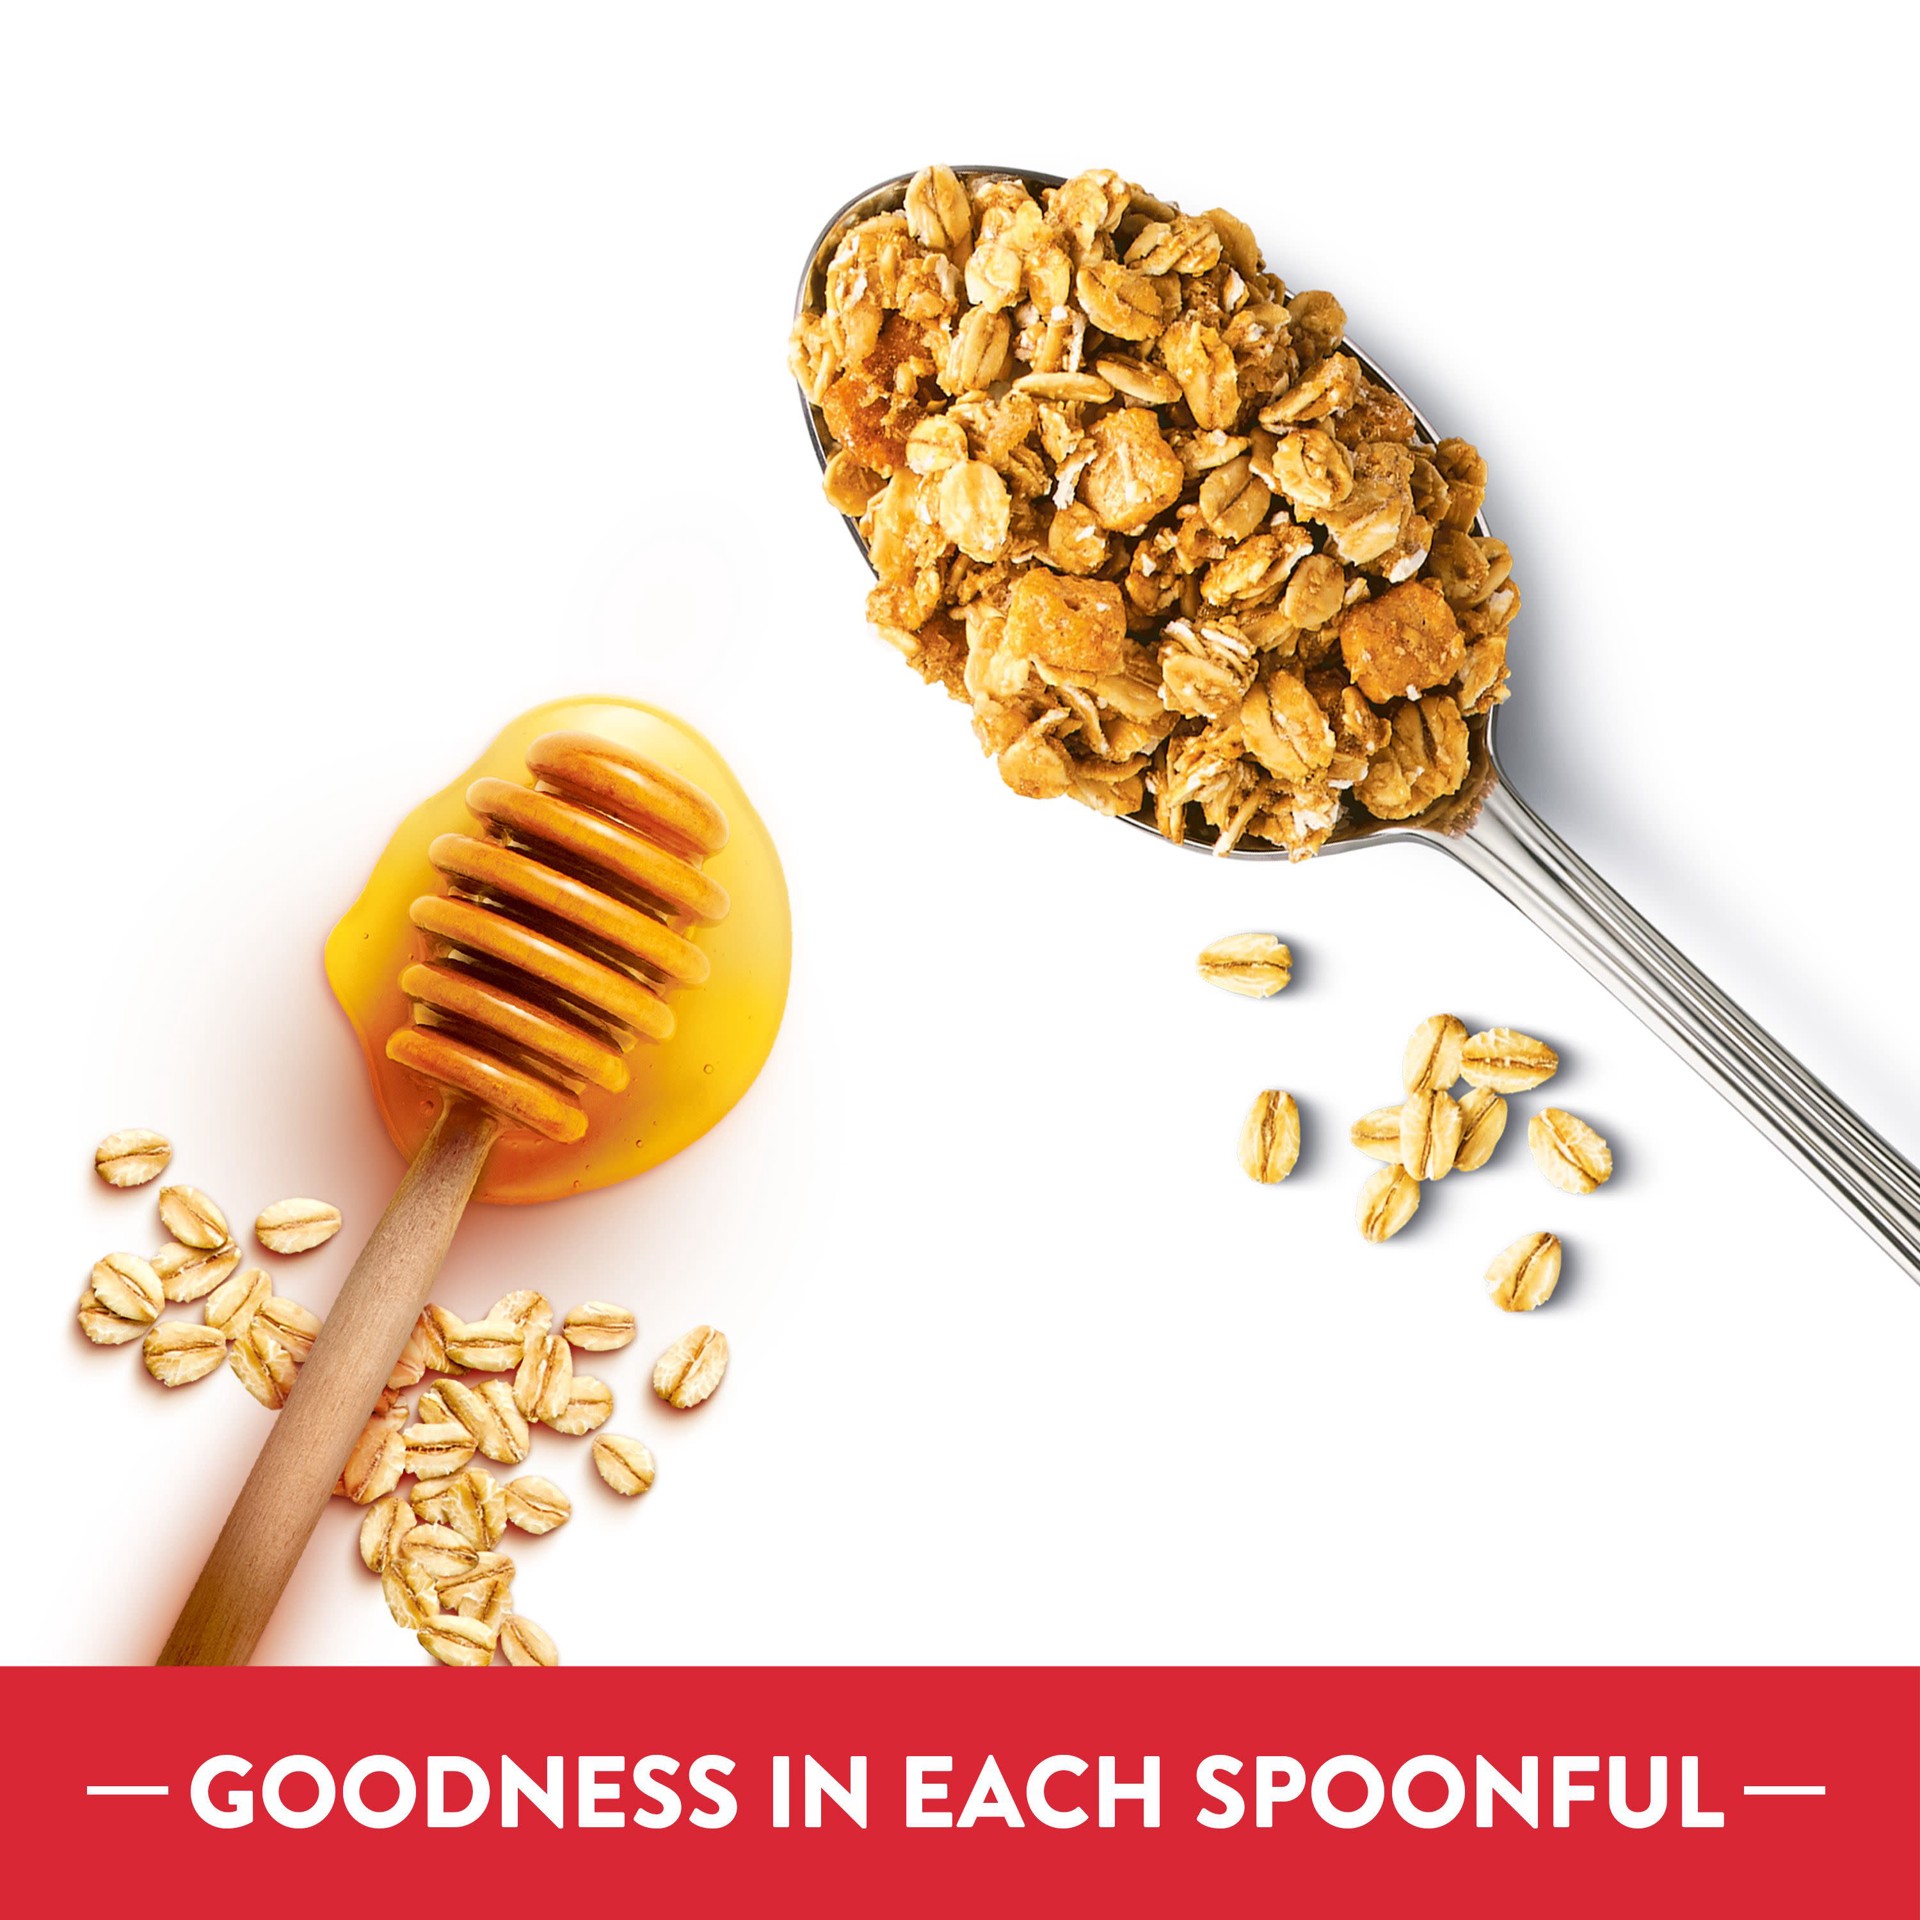 slide 4 of 5, Special K Granola Cereal, Fiber, Whole Grain Cereal, Touch of Honey, 11.3oz Bag, 1 Bag, 11.3 oz